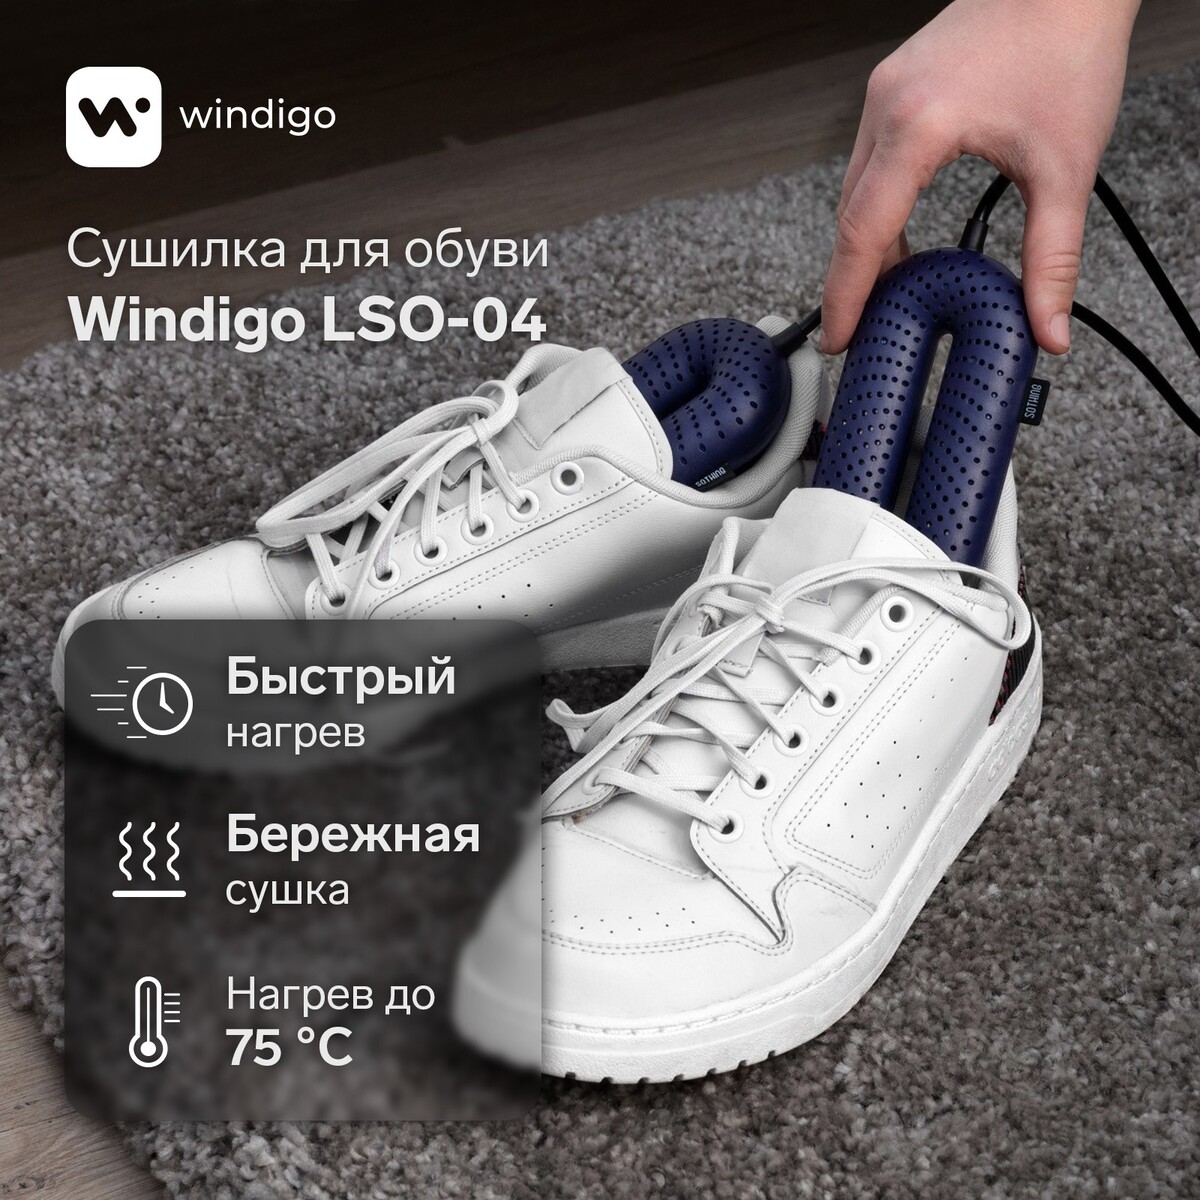 Сушилка для обуви windigo lso-04, 17 см, 20 вт, индикатор, синяя сушилка для обуви luazon lso 13 17 см 12 вт индикатор синяя